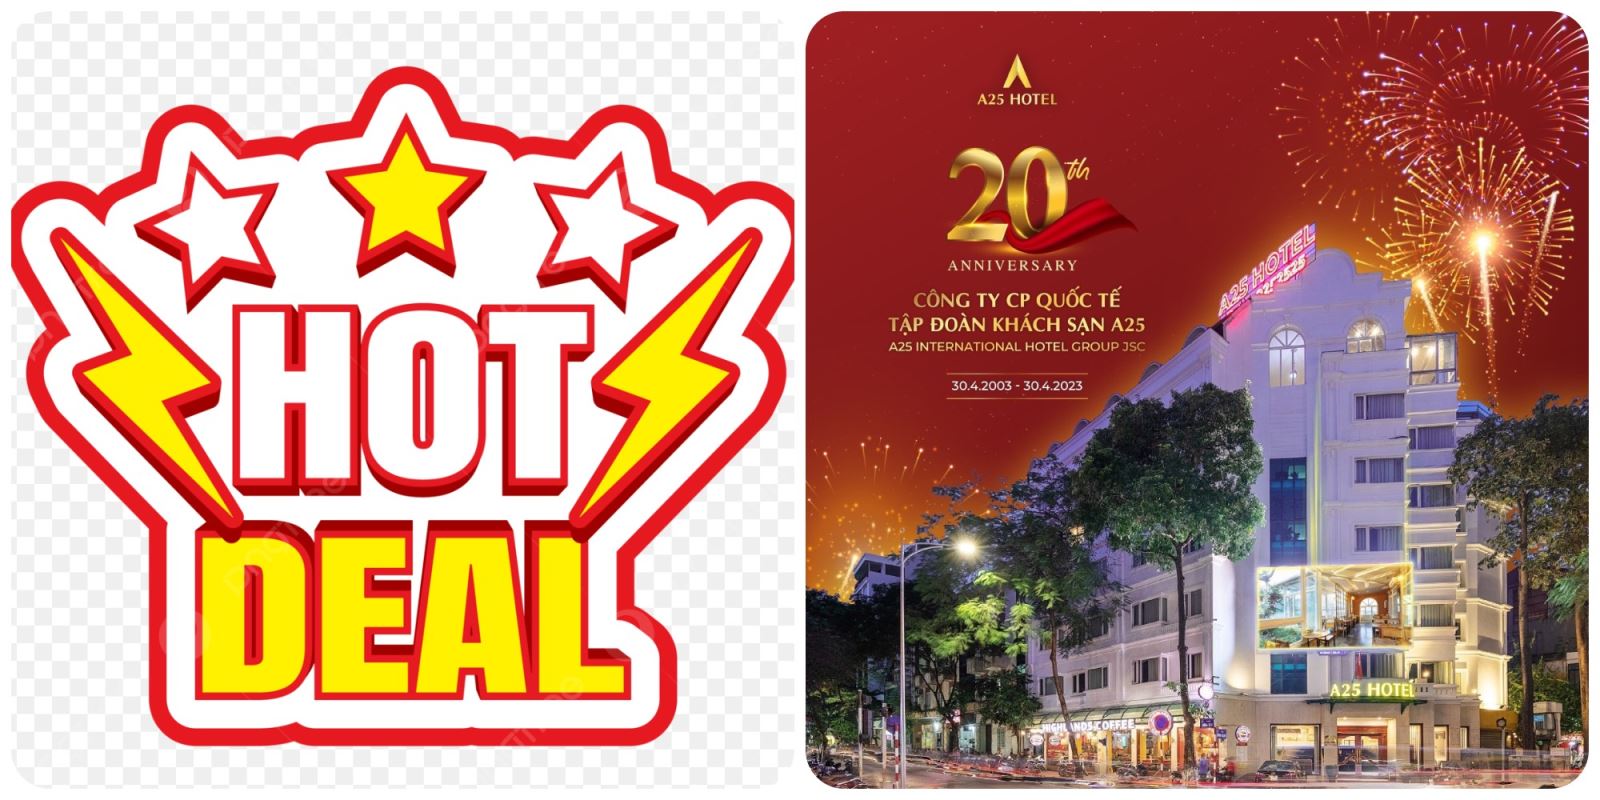 a25-hotel-hotdeal-uu-dai-ngap-tran-ron-rang-thang-8